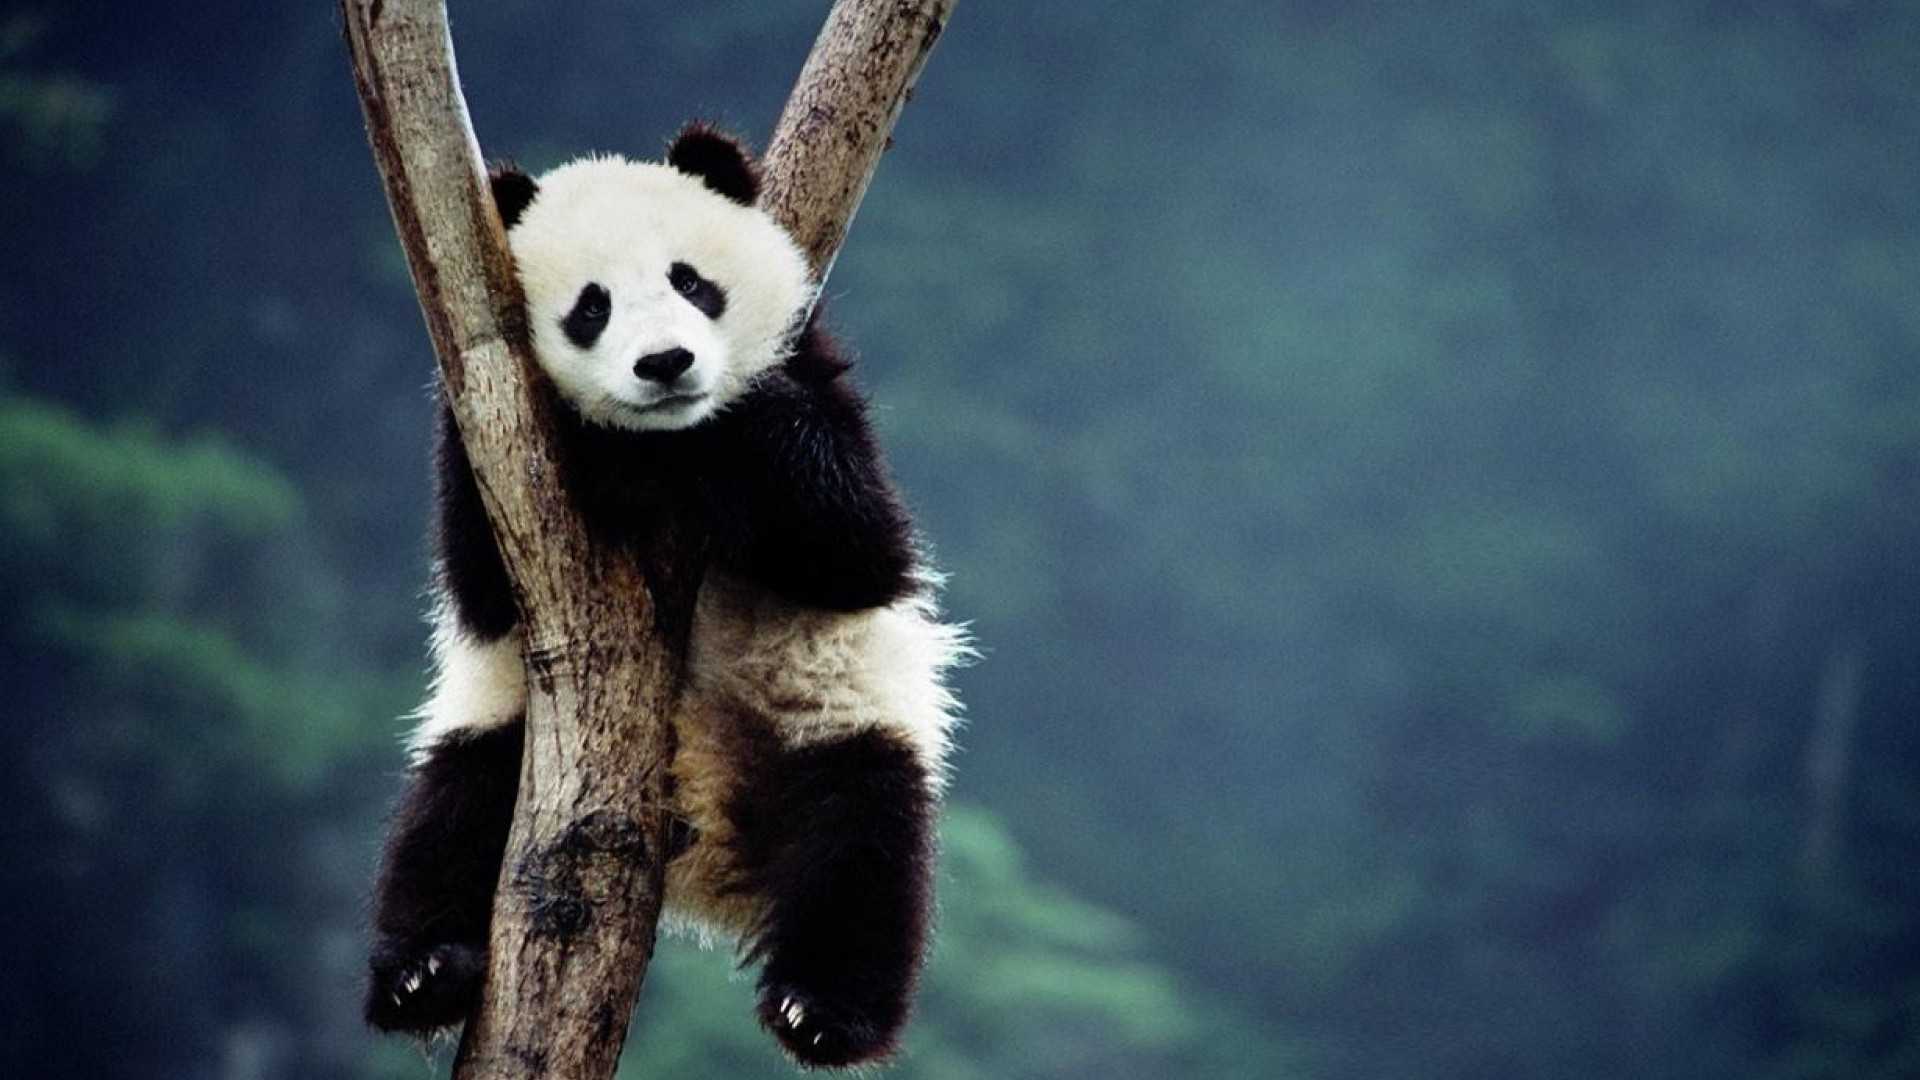 Cute Panda Desktop Wallpaper - VoBss